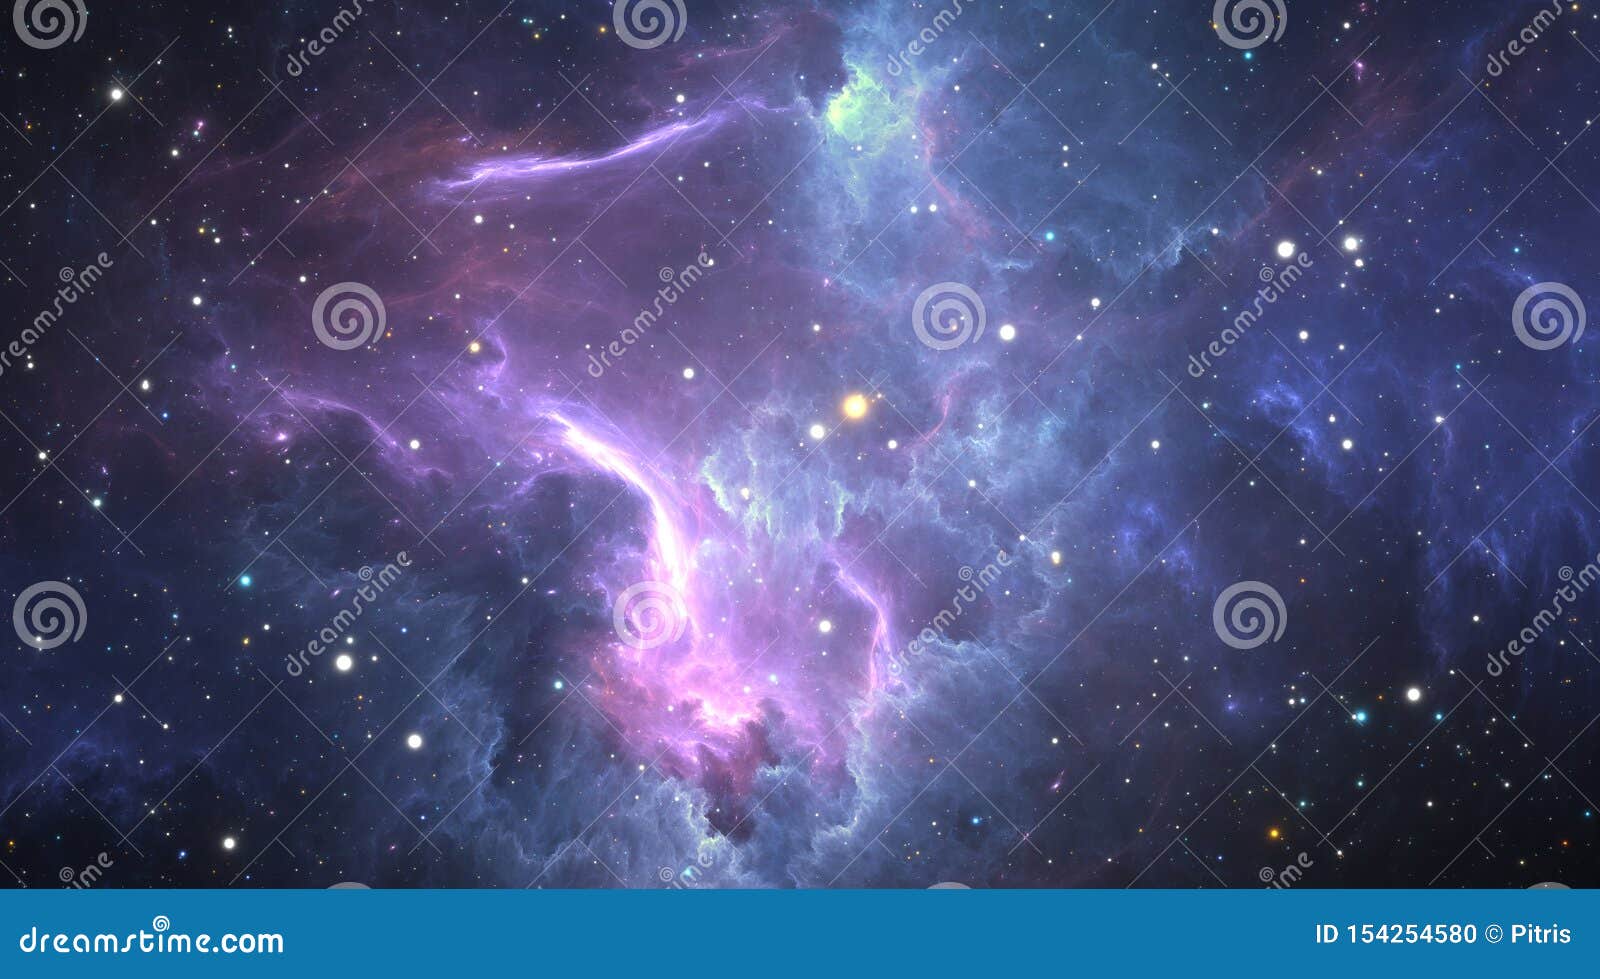 stellar system and gas nebula